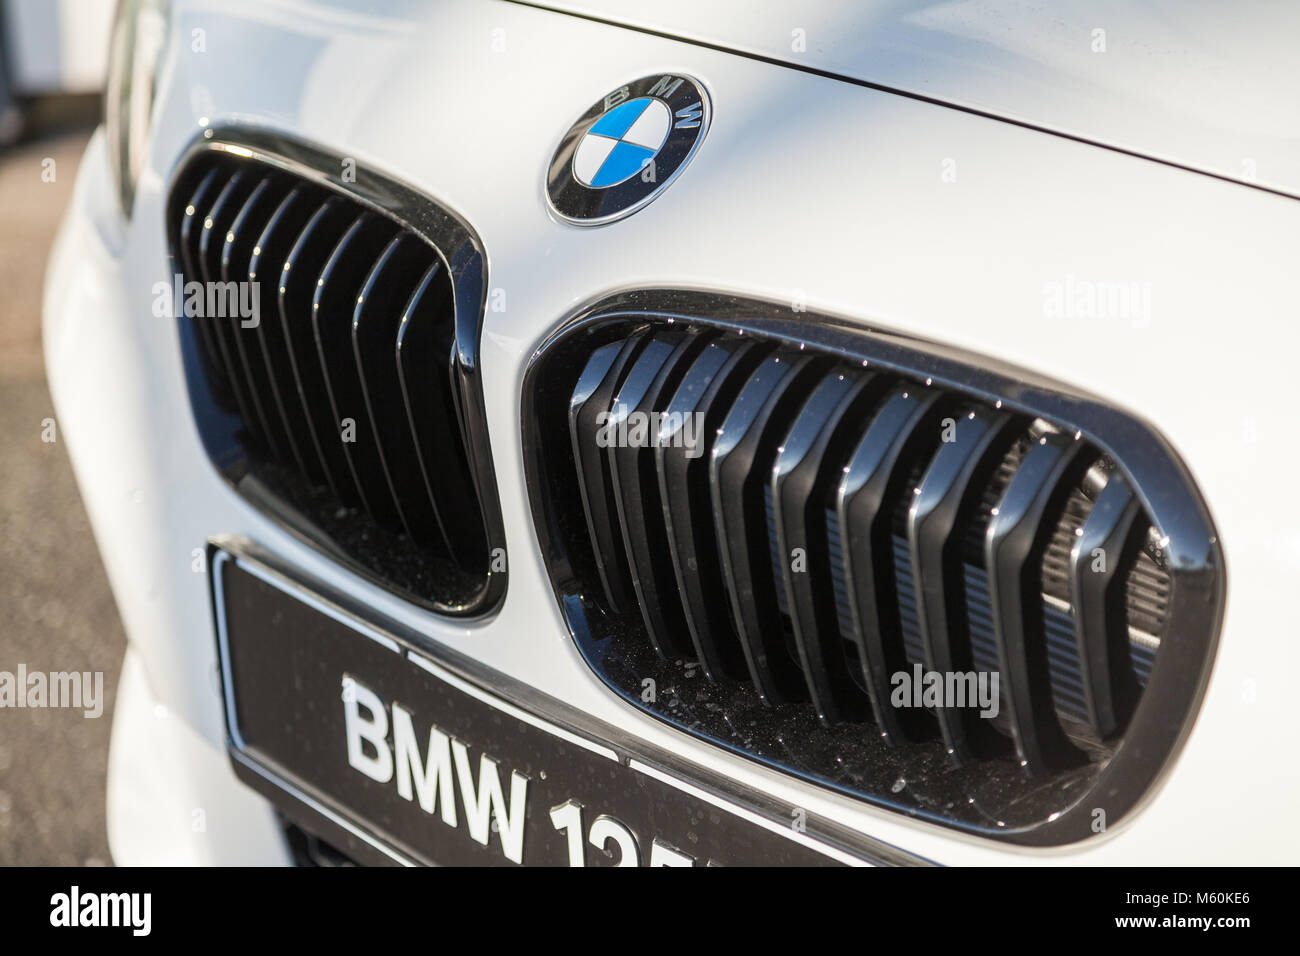 Fürth/Deutschland - am 25. FEBRUAR 2018: BMW Emblem auf einem bmw Auto. BMW ist ein deutscher multinationaler Unternehmen, die derzeit produziert Automobile und motorcyc Stockfoto